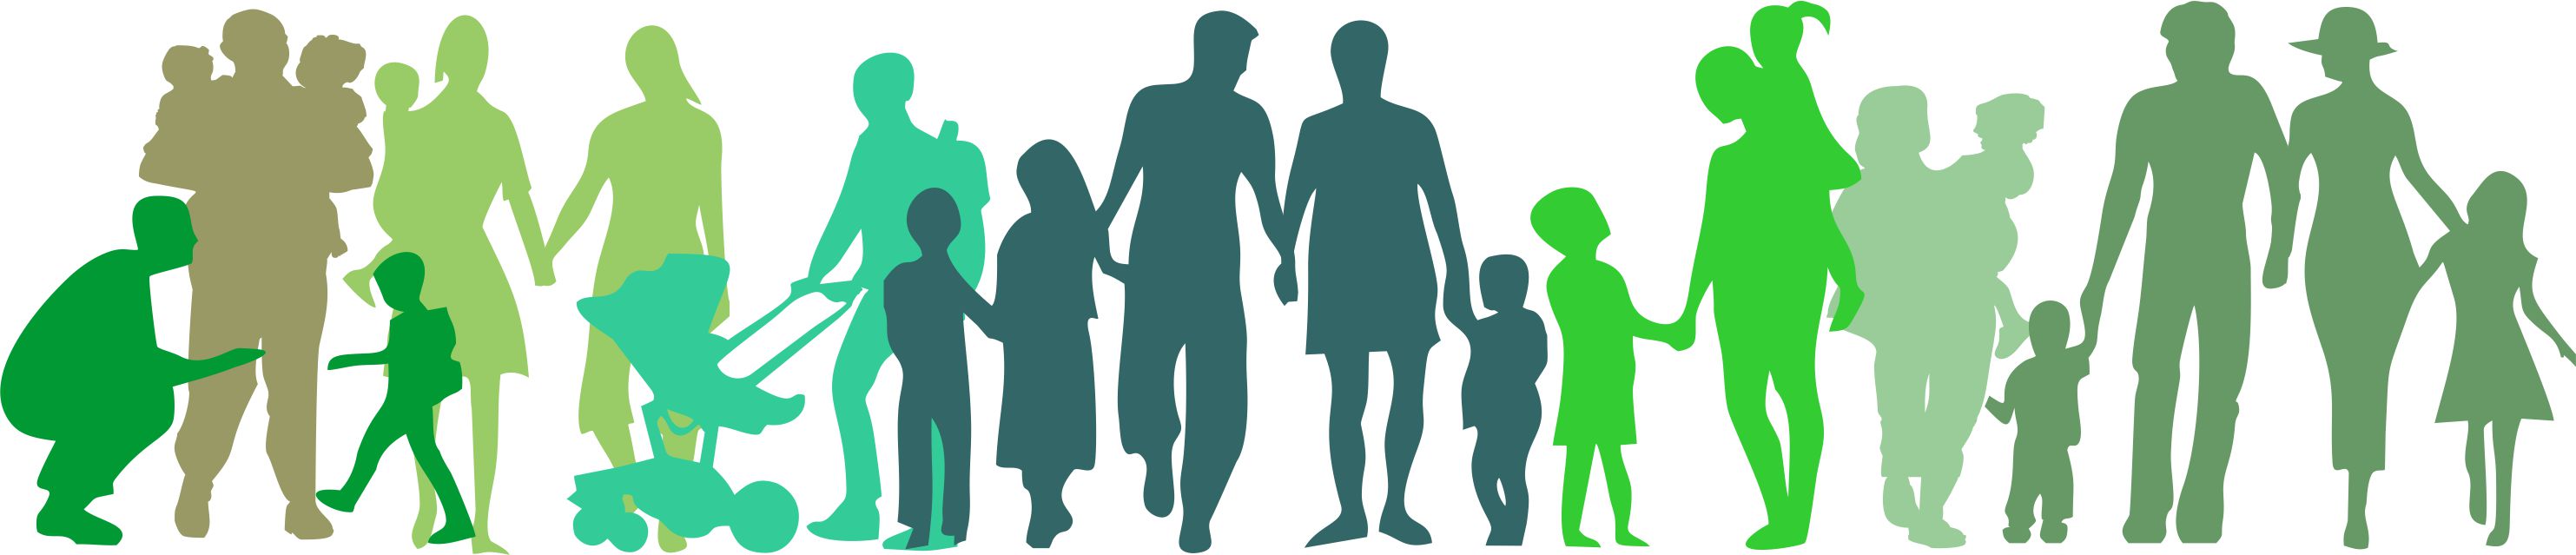 Grüne Personen die verschiedene Arten von Elternschaft darstellen sollen. Personen mit Kindern und Kinderwagen, mal eine erwachsene Person mal zwei. 